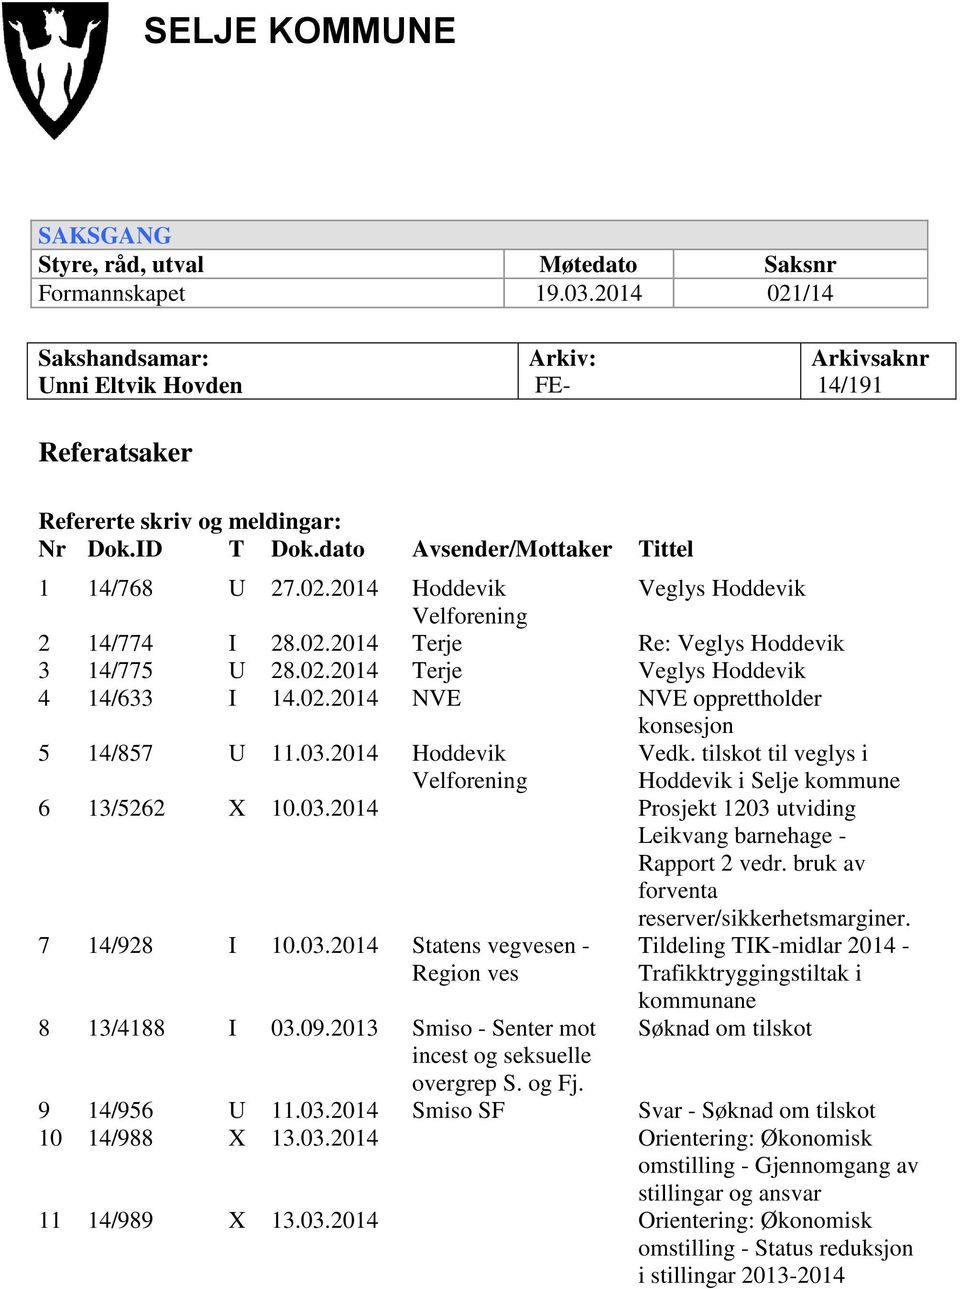 02.2014 Terje Re: Veglys Hoddevik 3 14/775 U 28.02.2014 Terje Veglys Hoddevik 4 14/633 I 14.02.2014 NVE NVE opprettholder konsesjon 5 14/857 U 11.03.2014 Hoddevik Velforening Vedk.